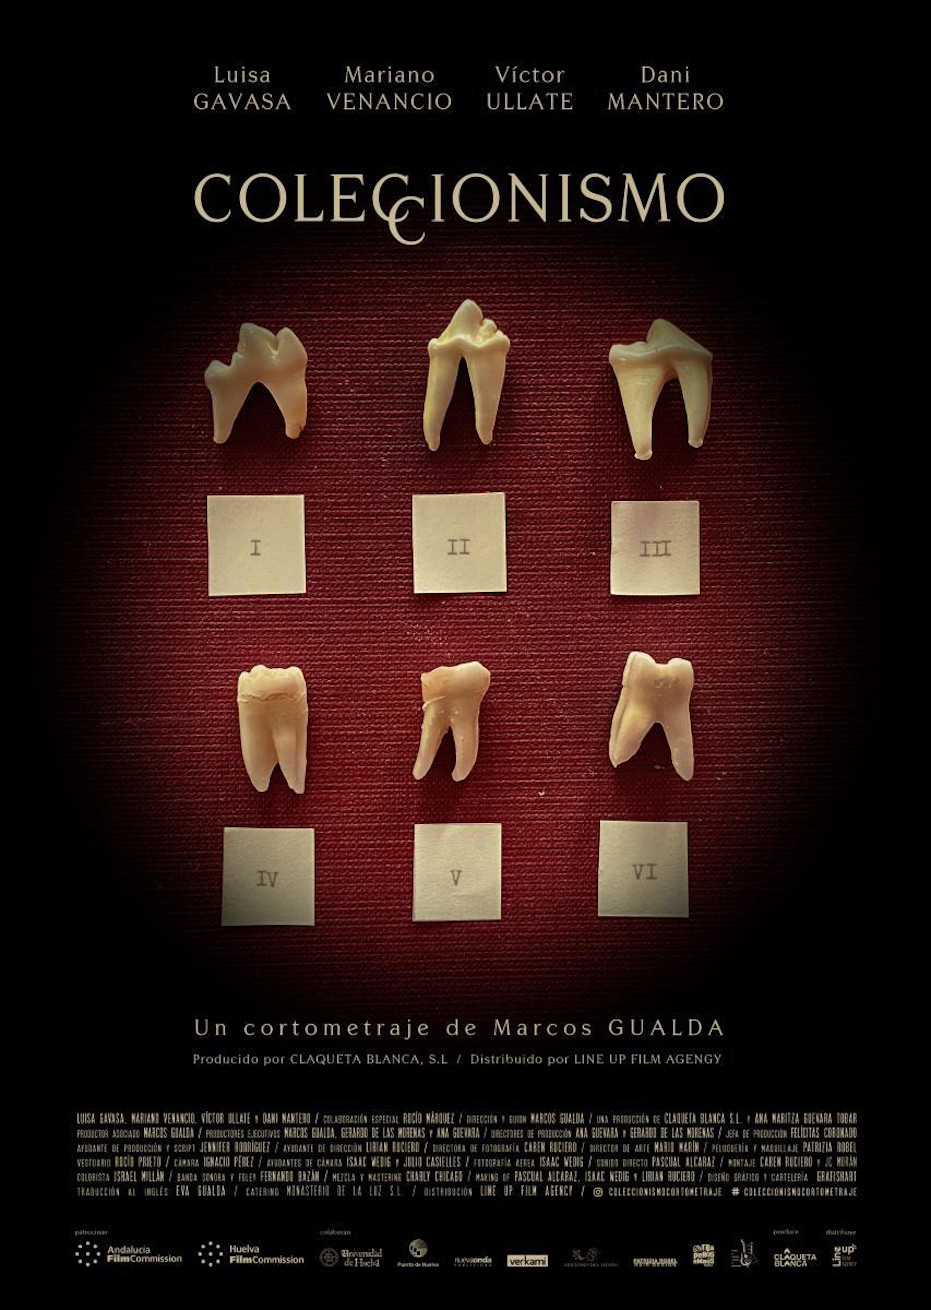 Ciclo ‘Un mundo en liquidación’: proyección del corto ‘Coleccionismo’, de Marcos Gualda. Coloquio posterior con Marcos Gualda y Luisa Gavasa